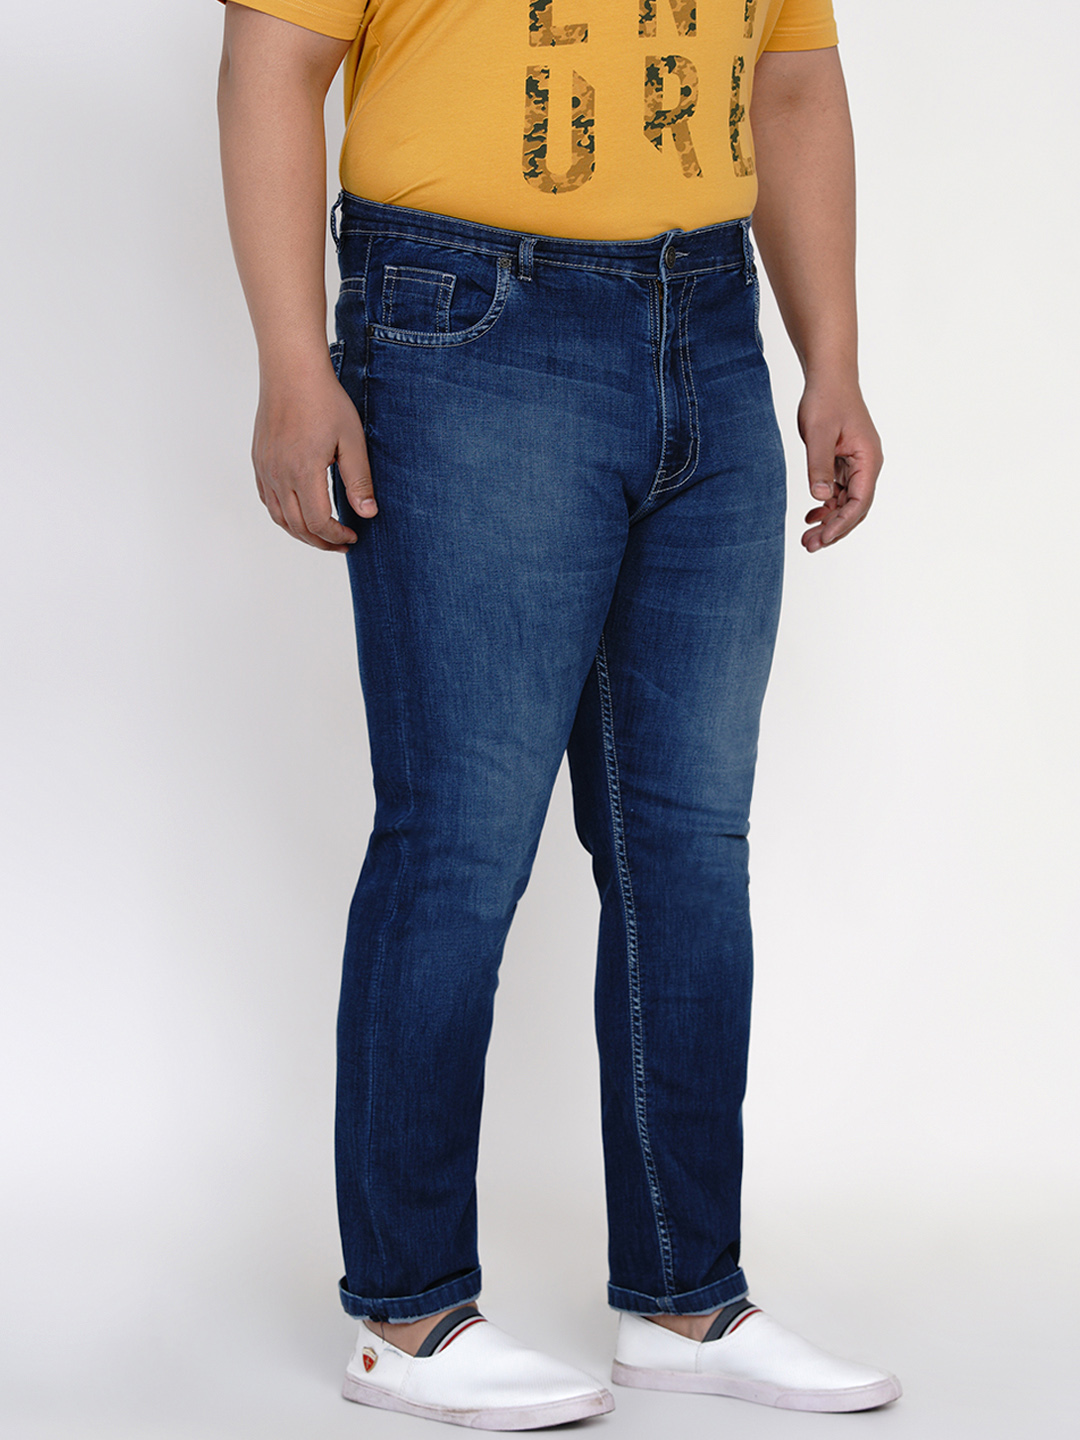 bottomwear/jeans/JPJ12118/jpj12118-3.jpg